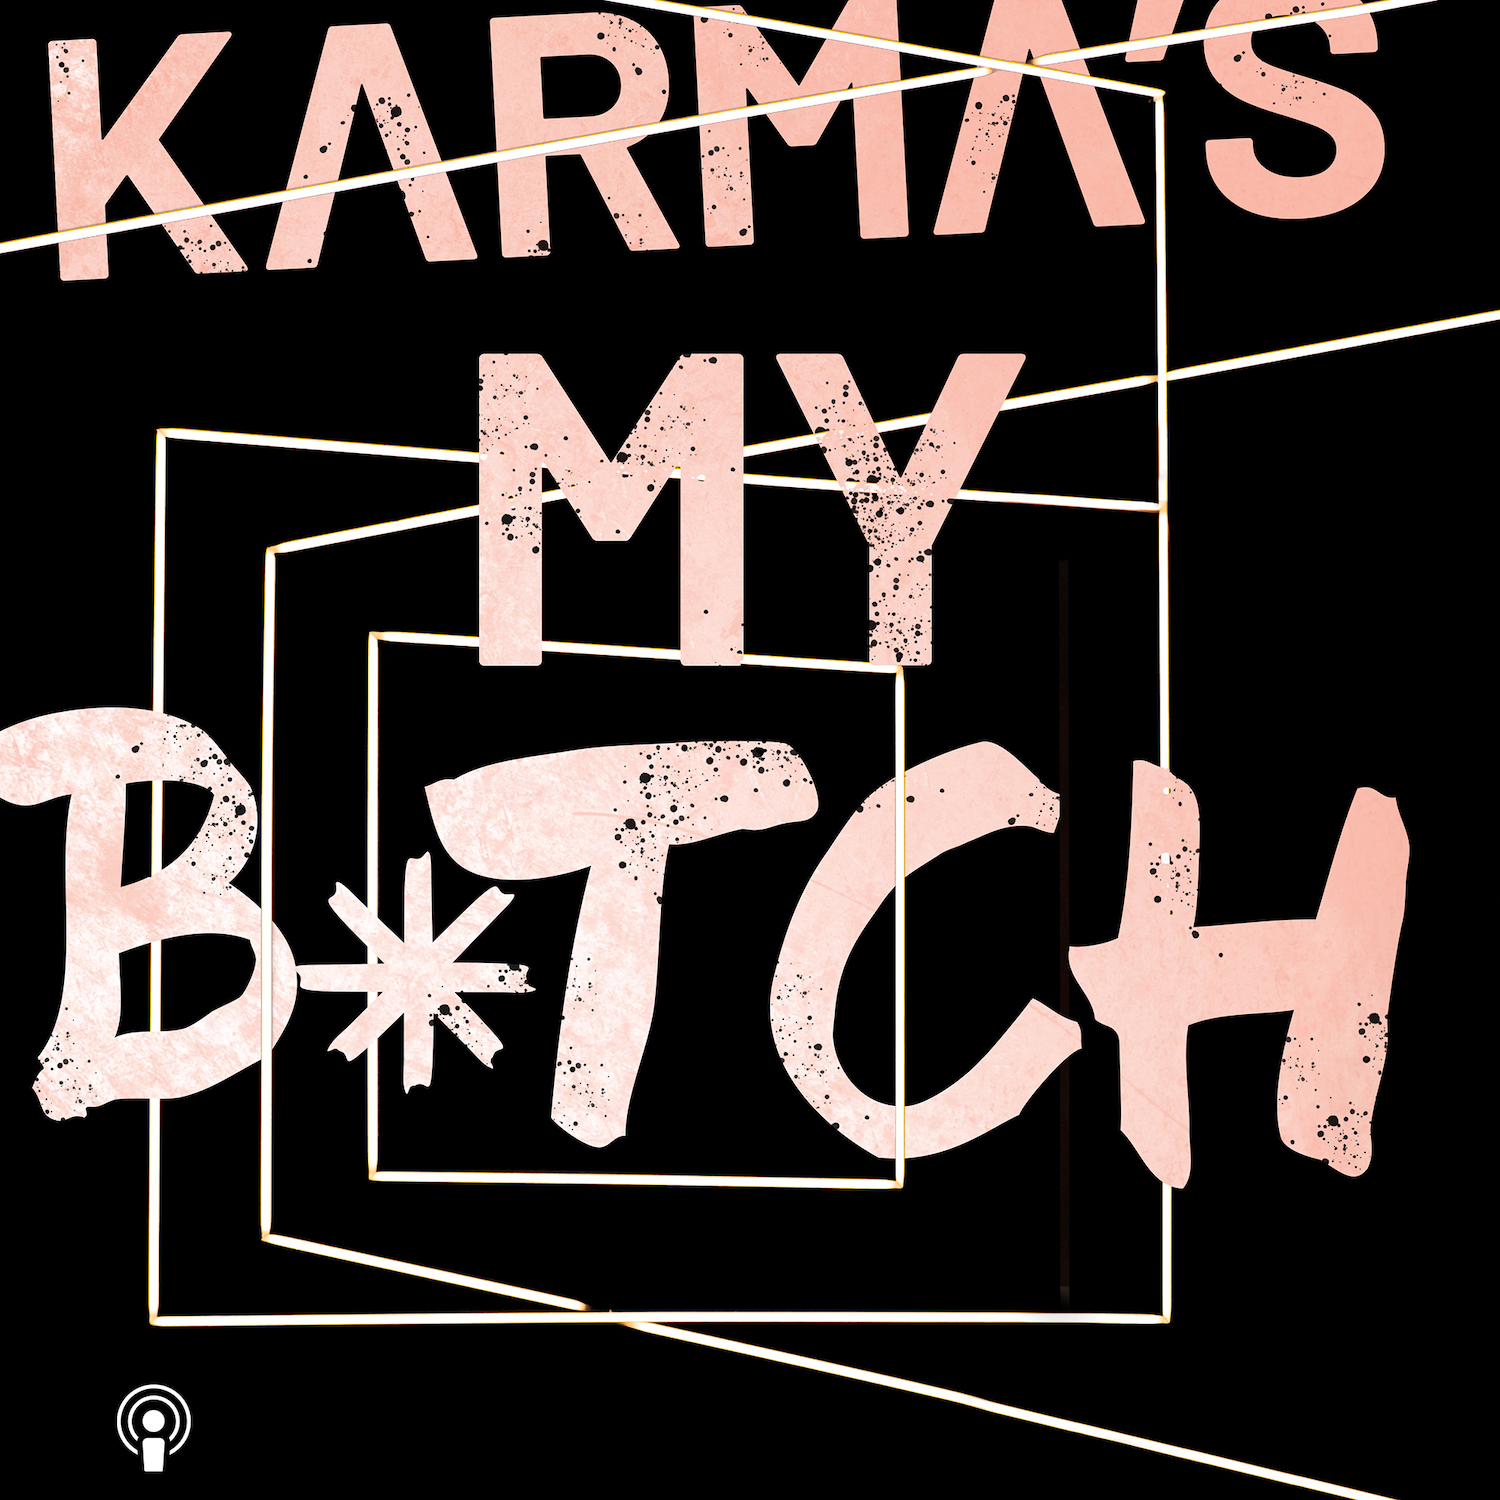 Karma’s My Bitch